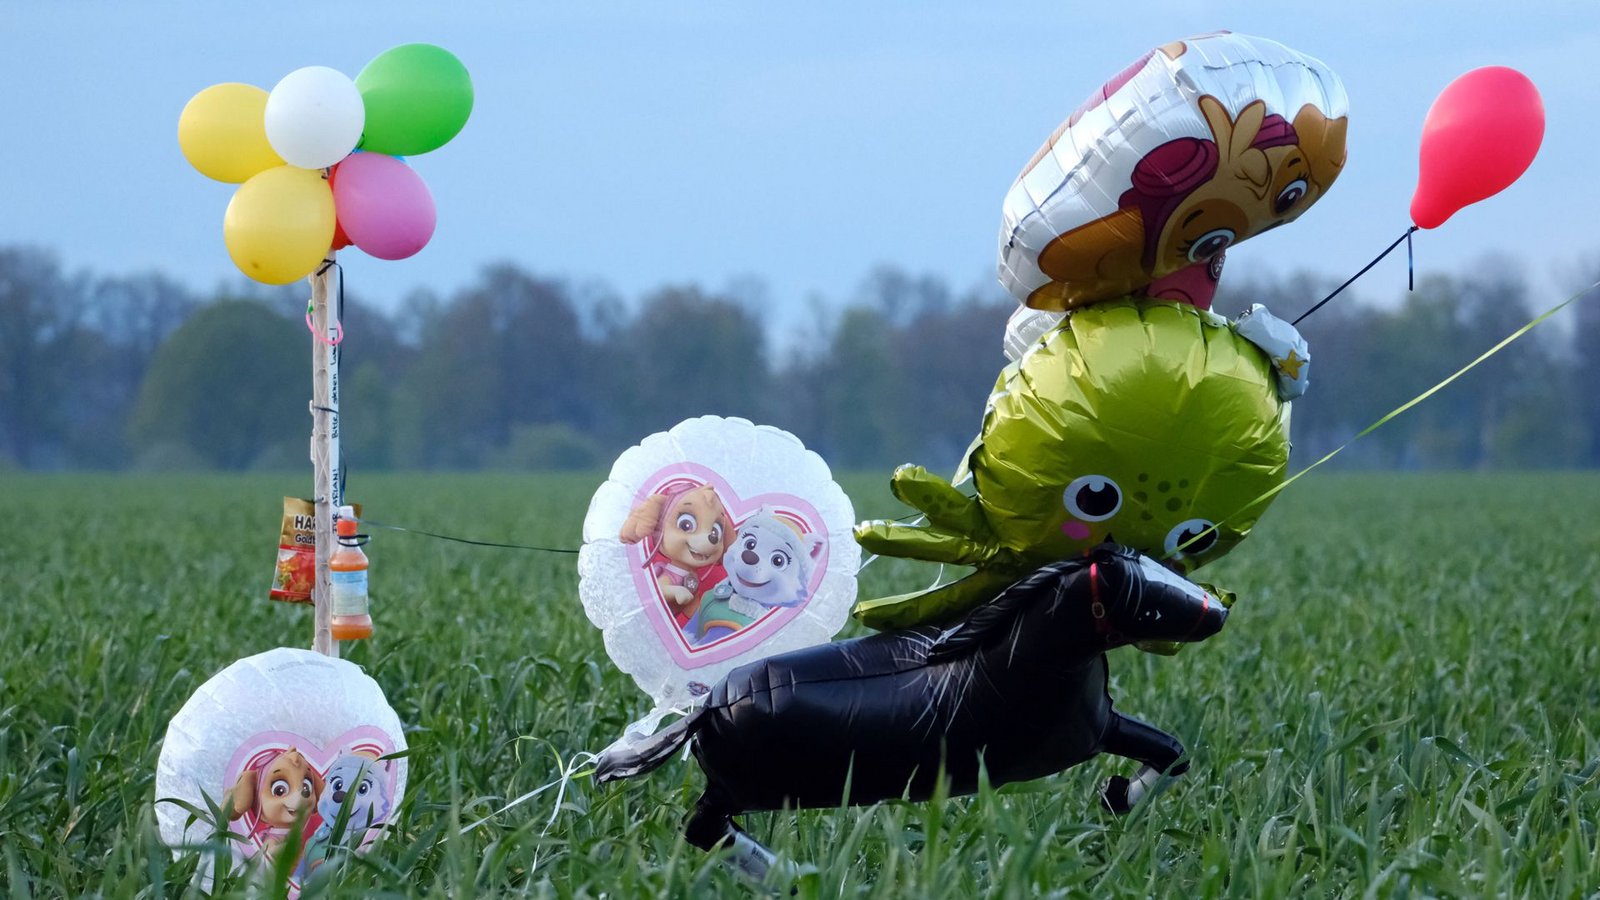 Die Polizei versucht mit Ballons und Süßigkeiten die Aufmerksamkeit des vermissten  Jungen zu gewinnen, der Autist ist.Foto: dpa/Markus Hibbeler